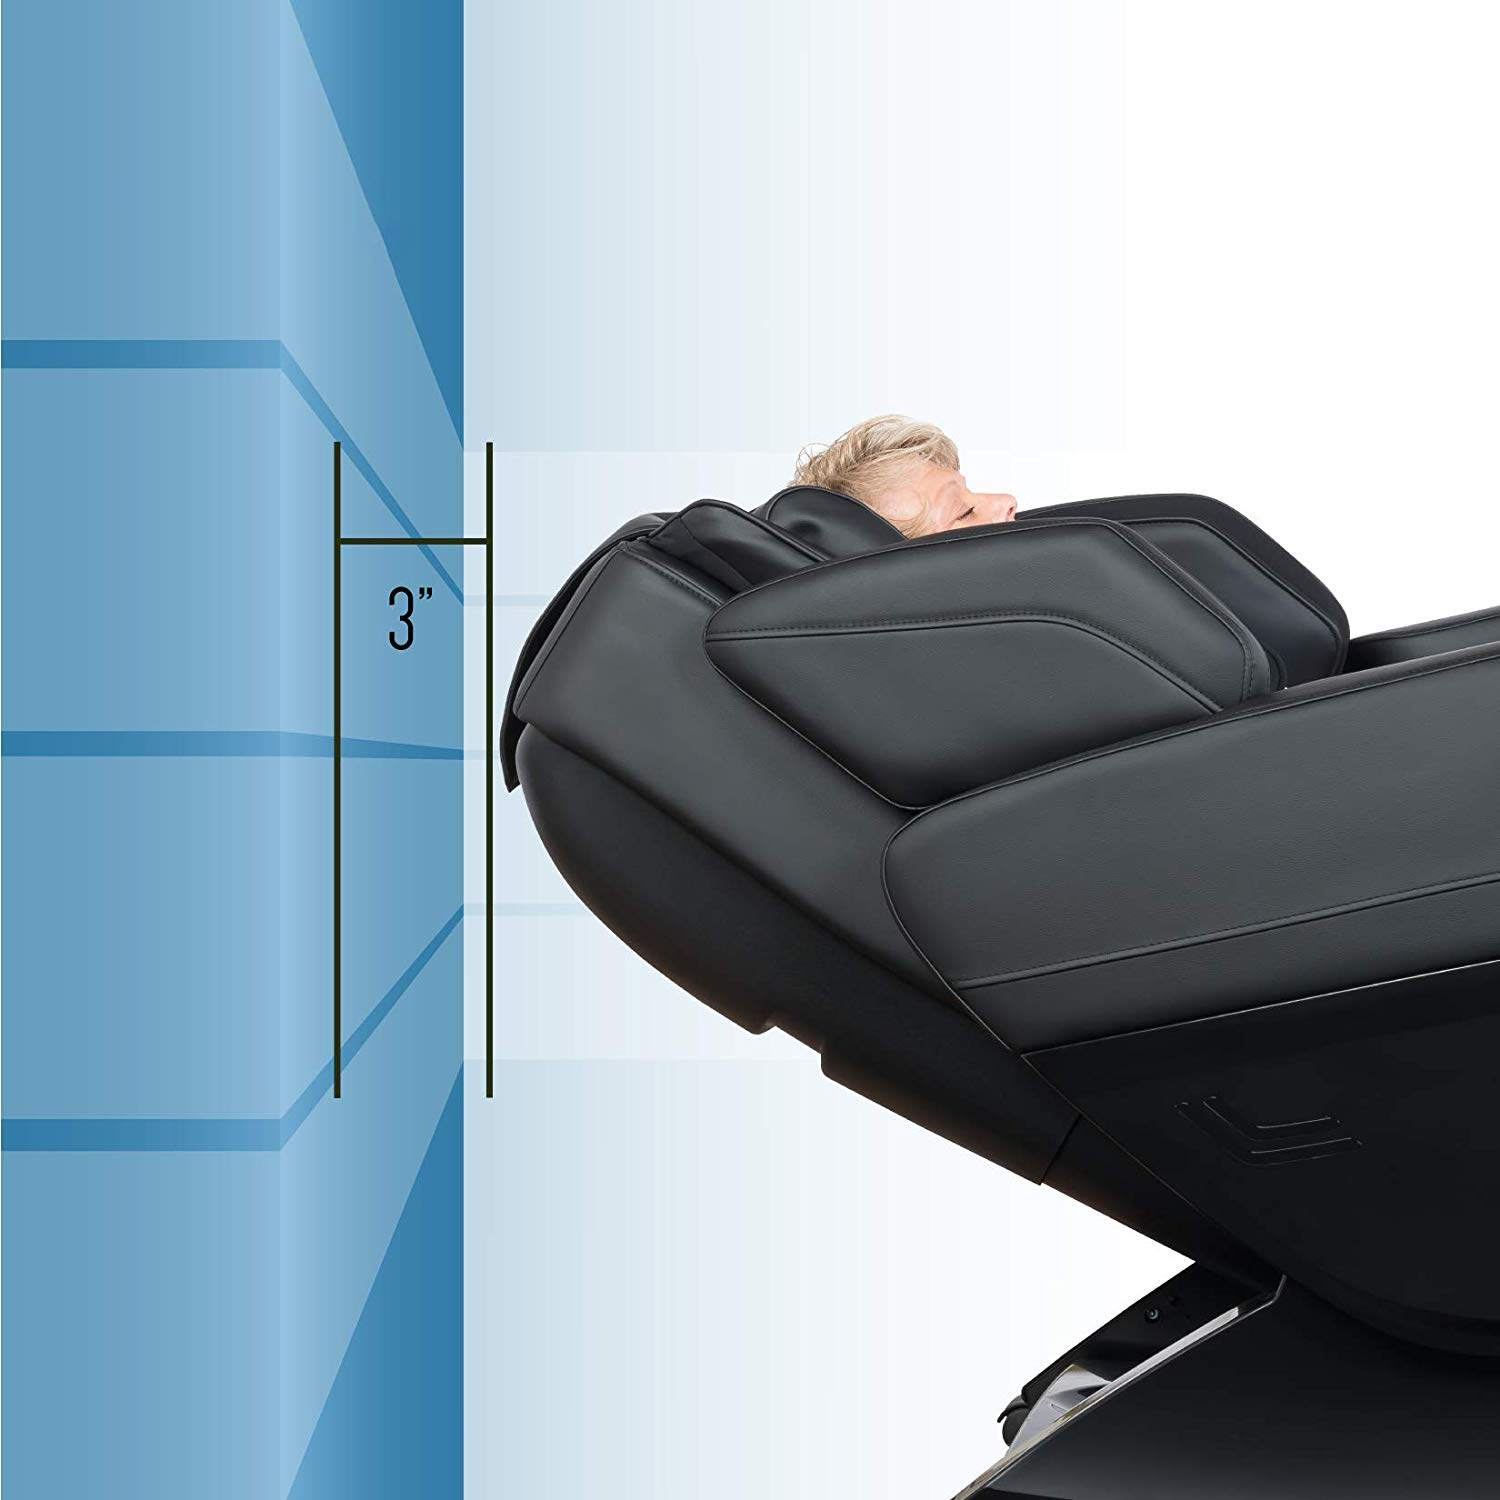 Массажные кресла противопоказания: Что лучше купить - массажное кресло или массажную кровать?